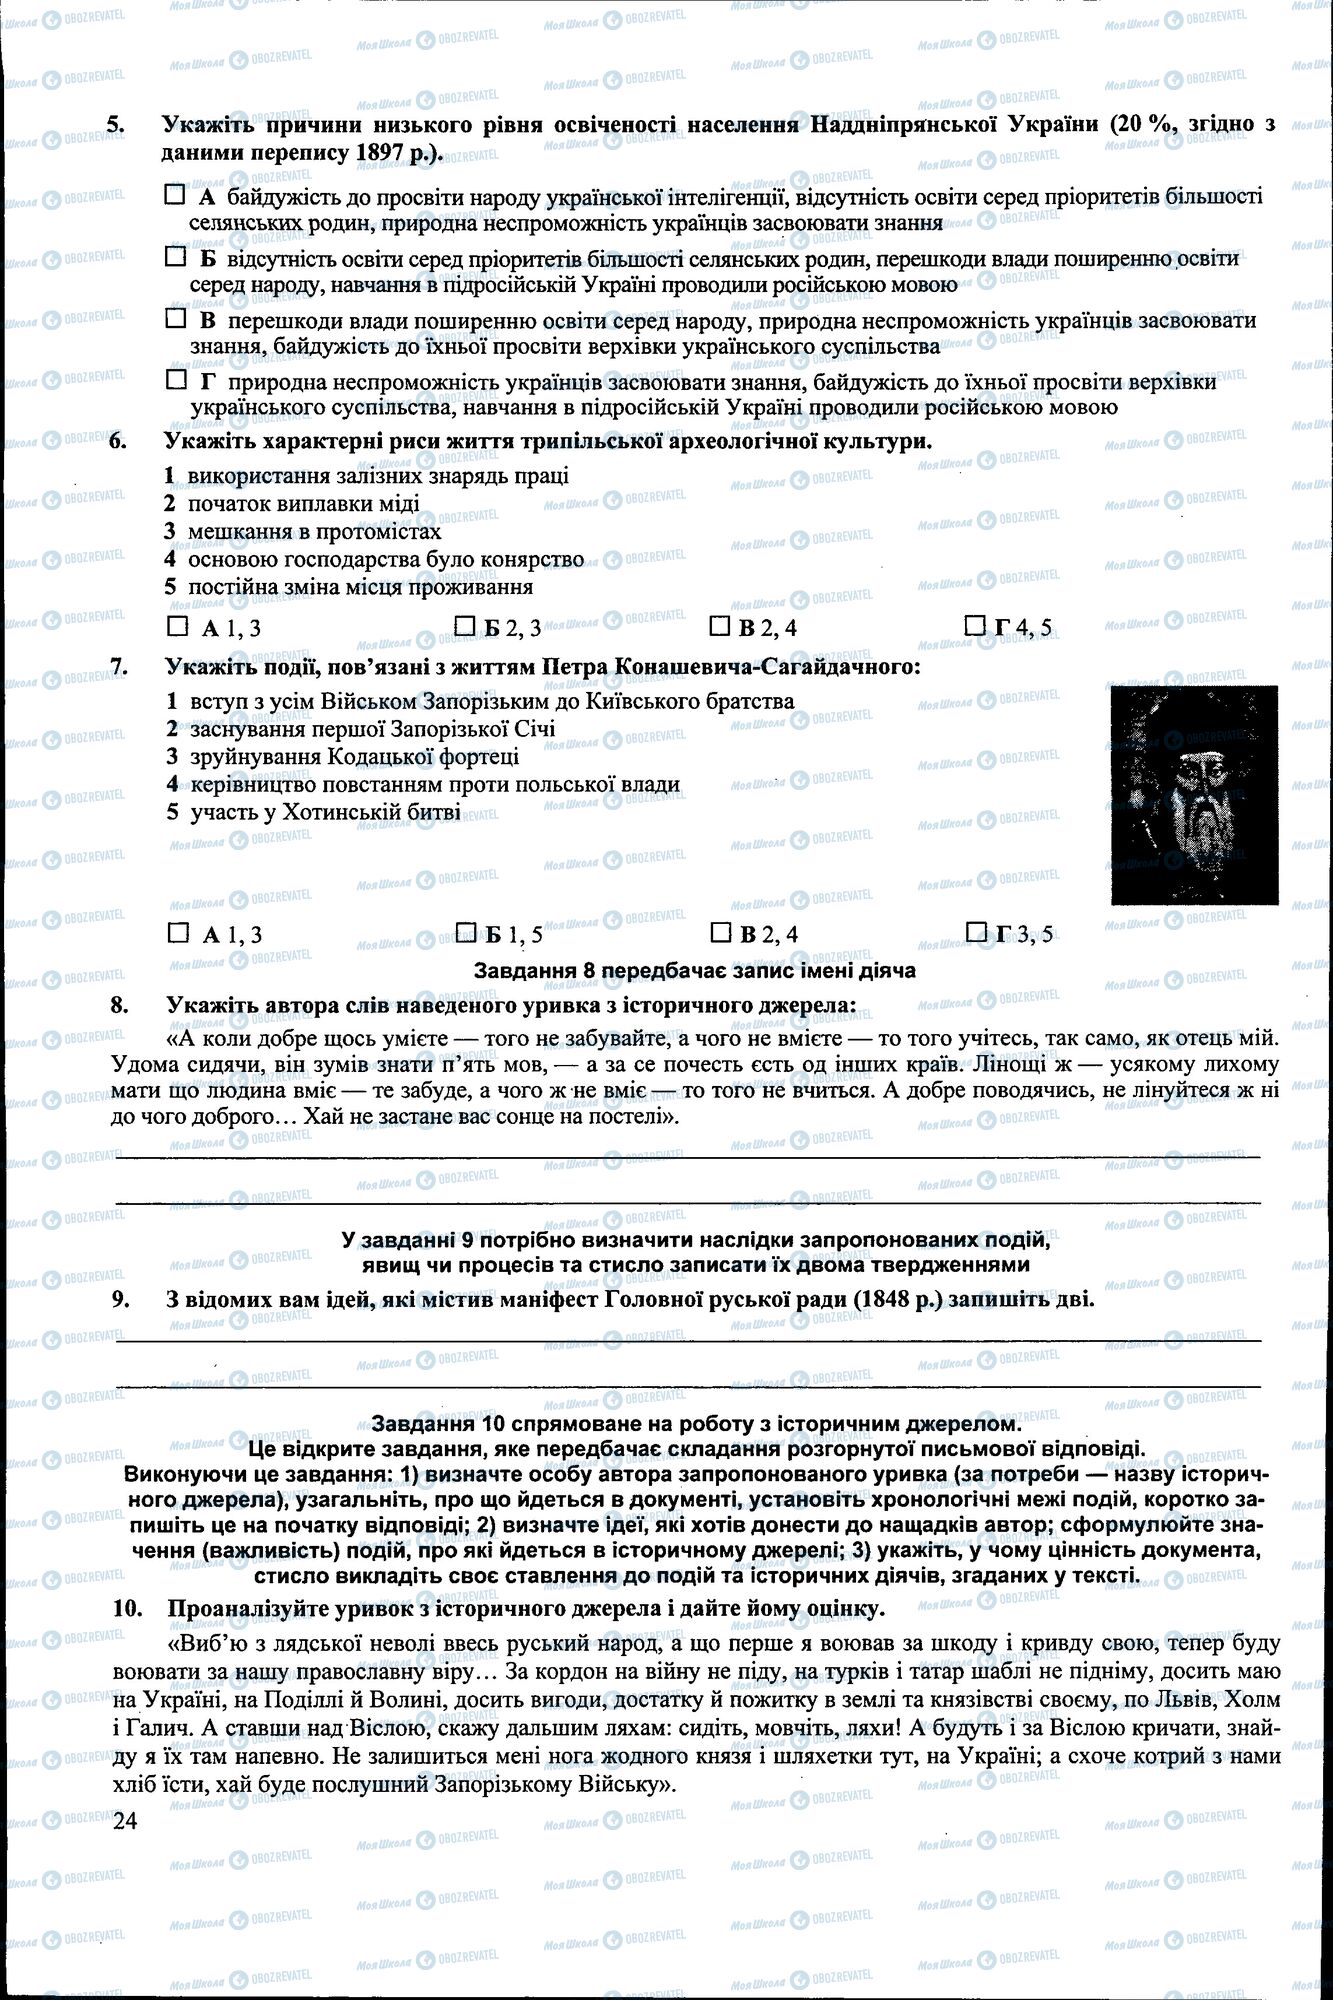 ДПА История Украины 9 класс страница 024